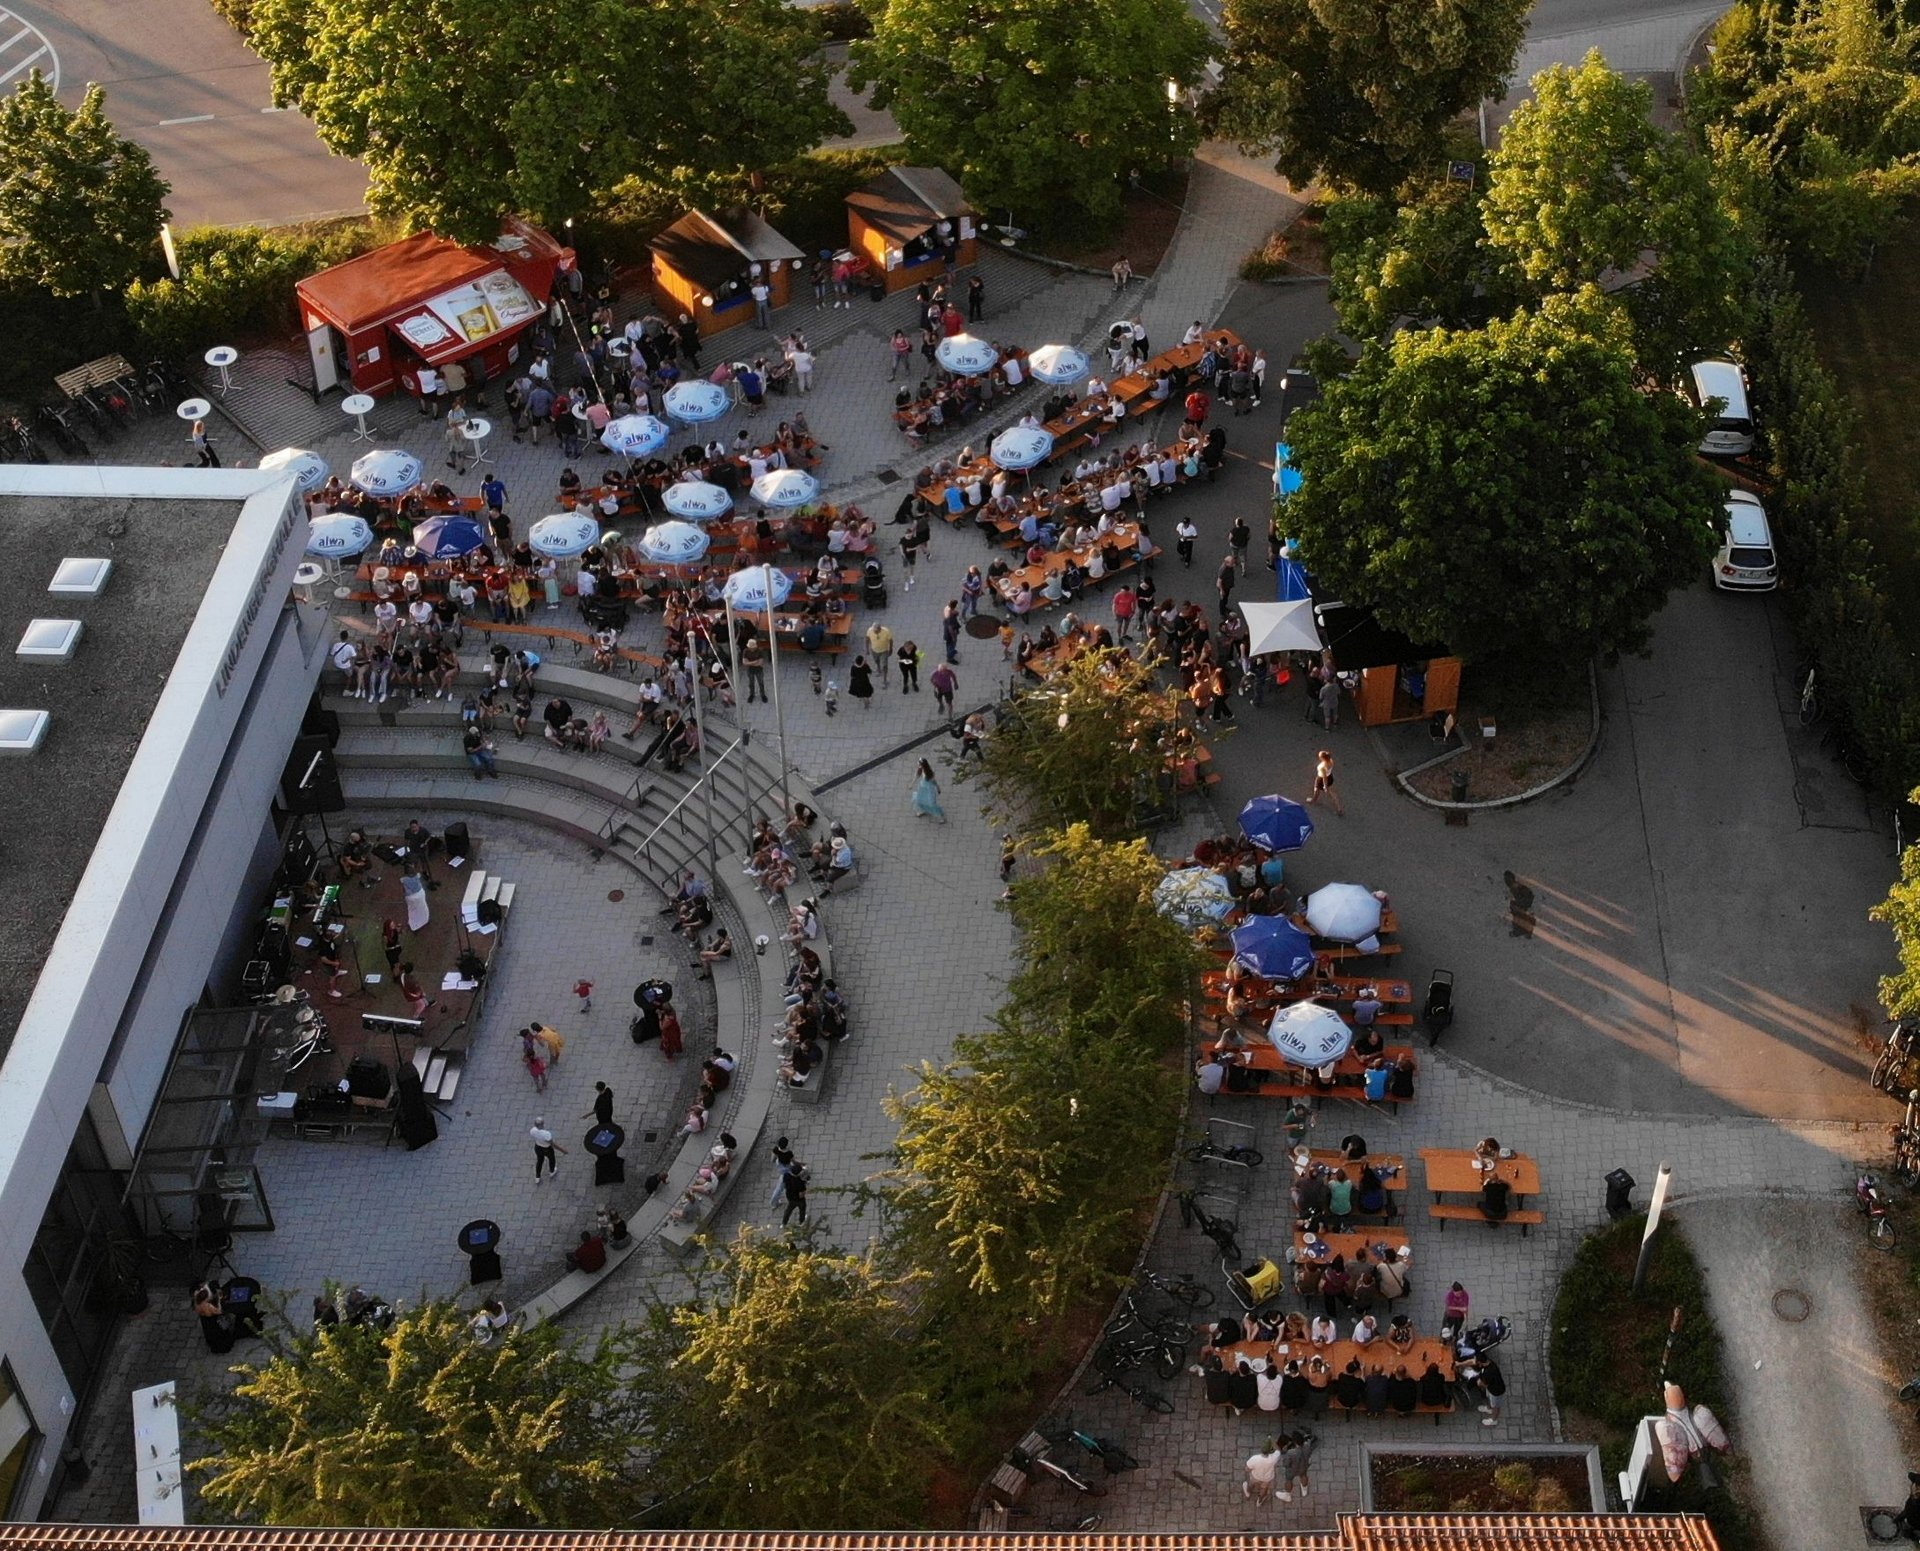 Luftbild von dem Festgeschehen mit Bierbänken und Bürger